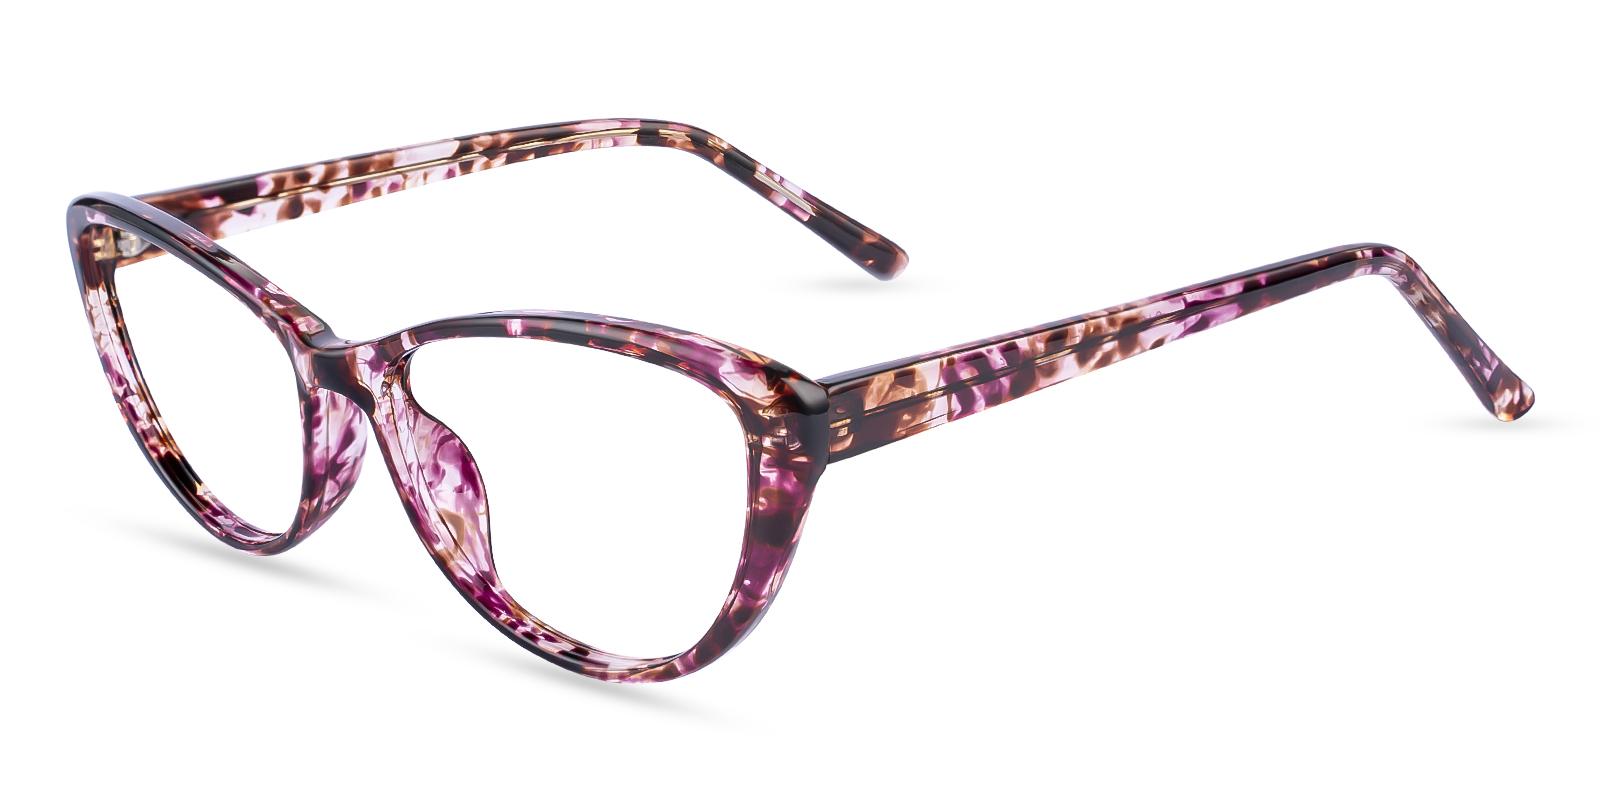 Memento Pattern Acetate Eyeglasses , UniversalBridgeFit Frames from ABBE Glasses